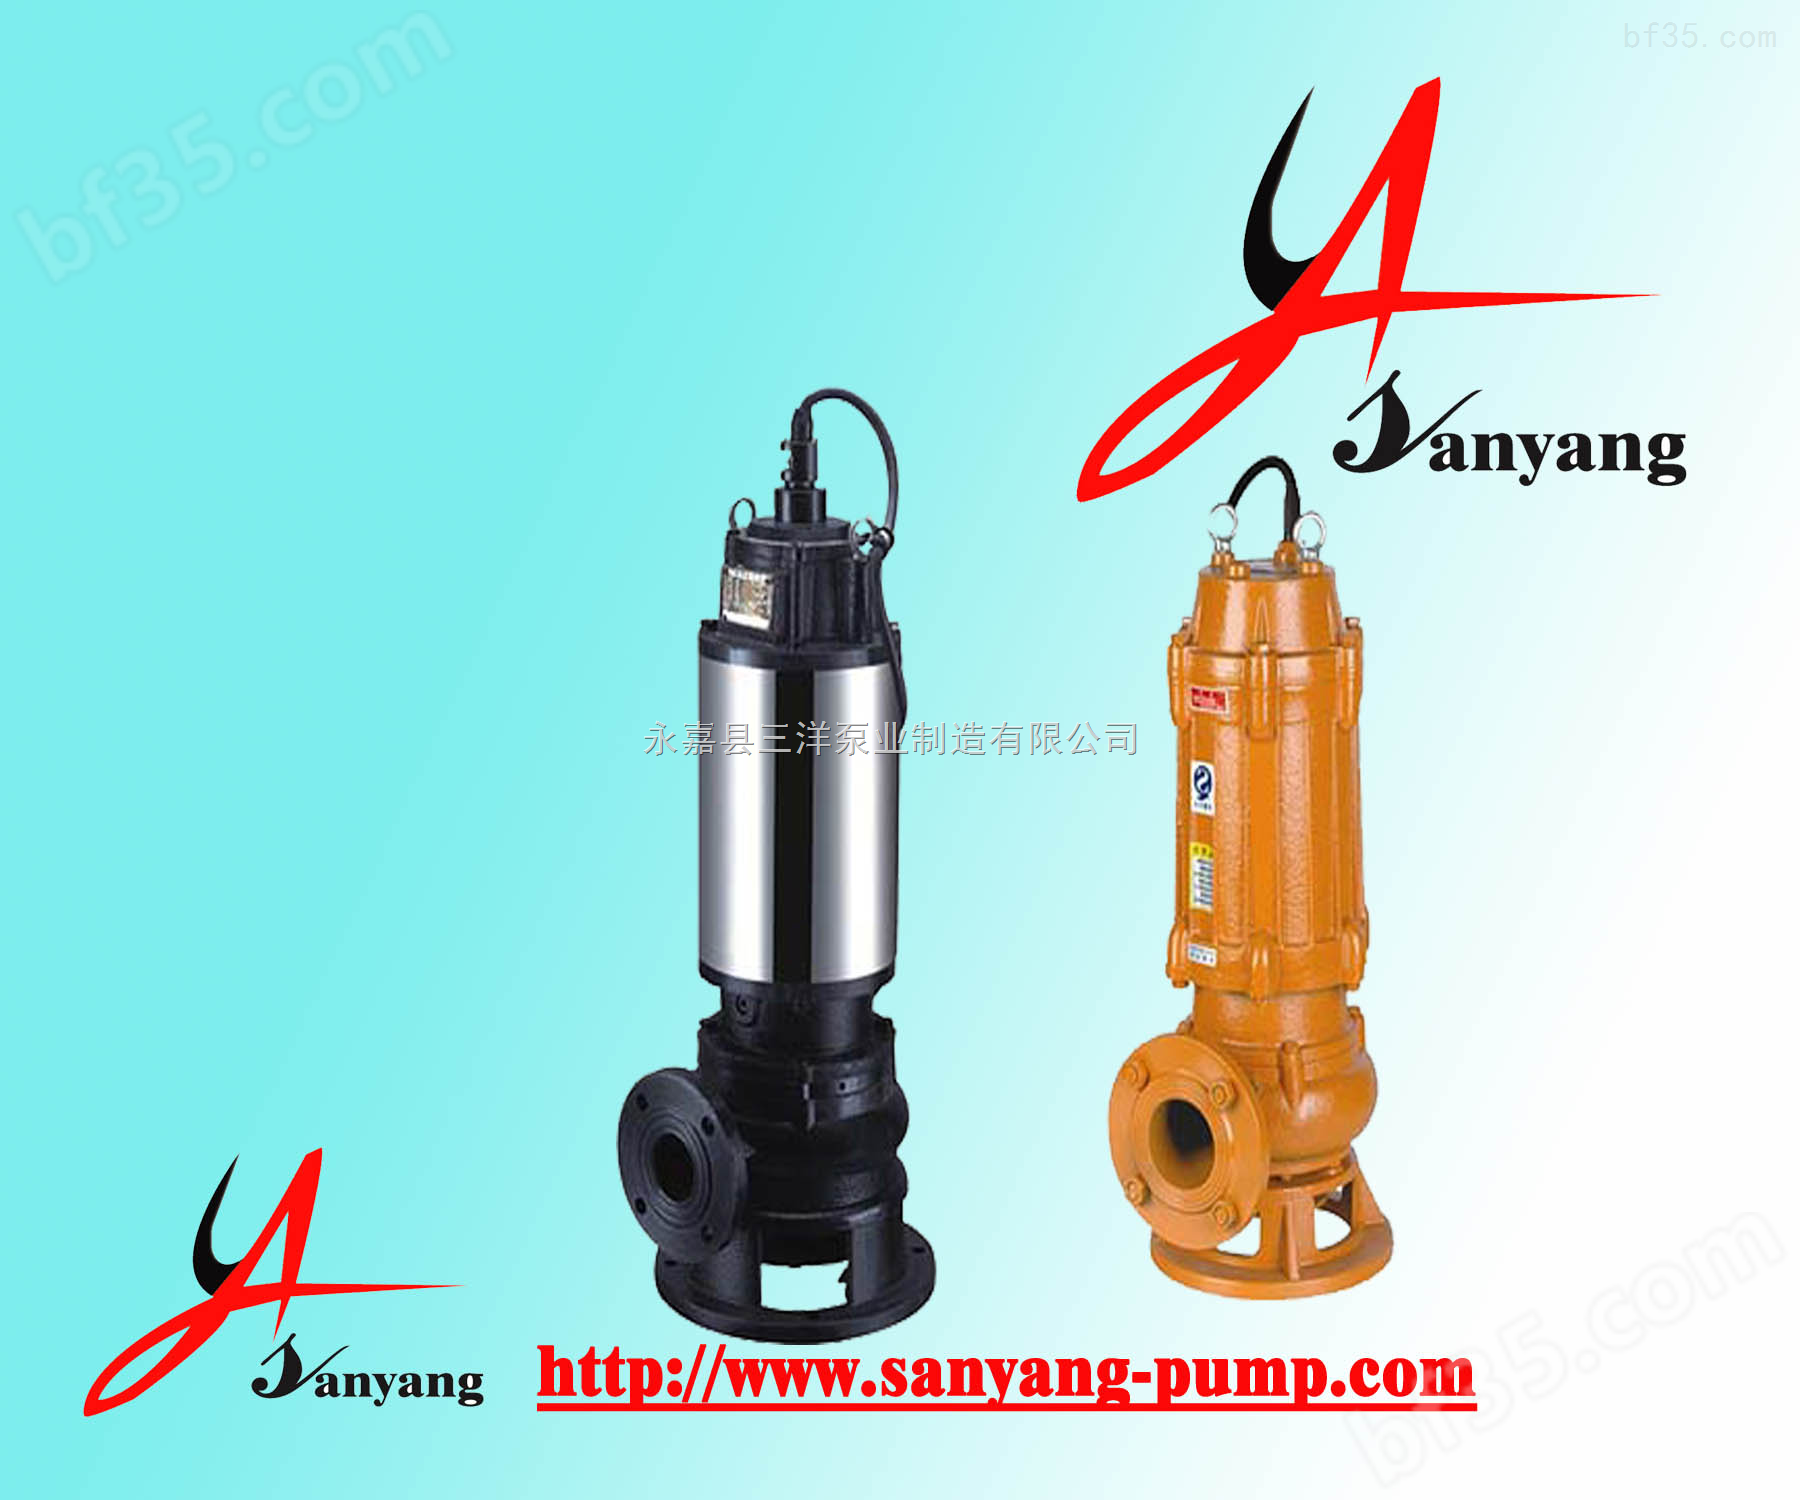 三洋泵业,JYWQ搅匀式排污泵,JYWQ200-300-7-3000-11